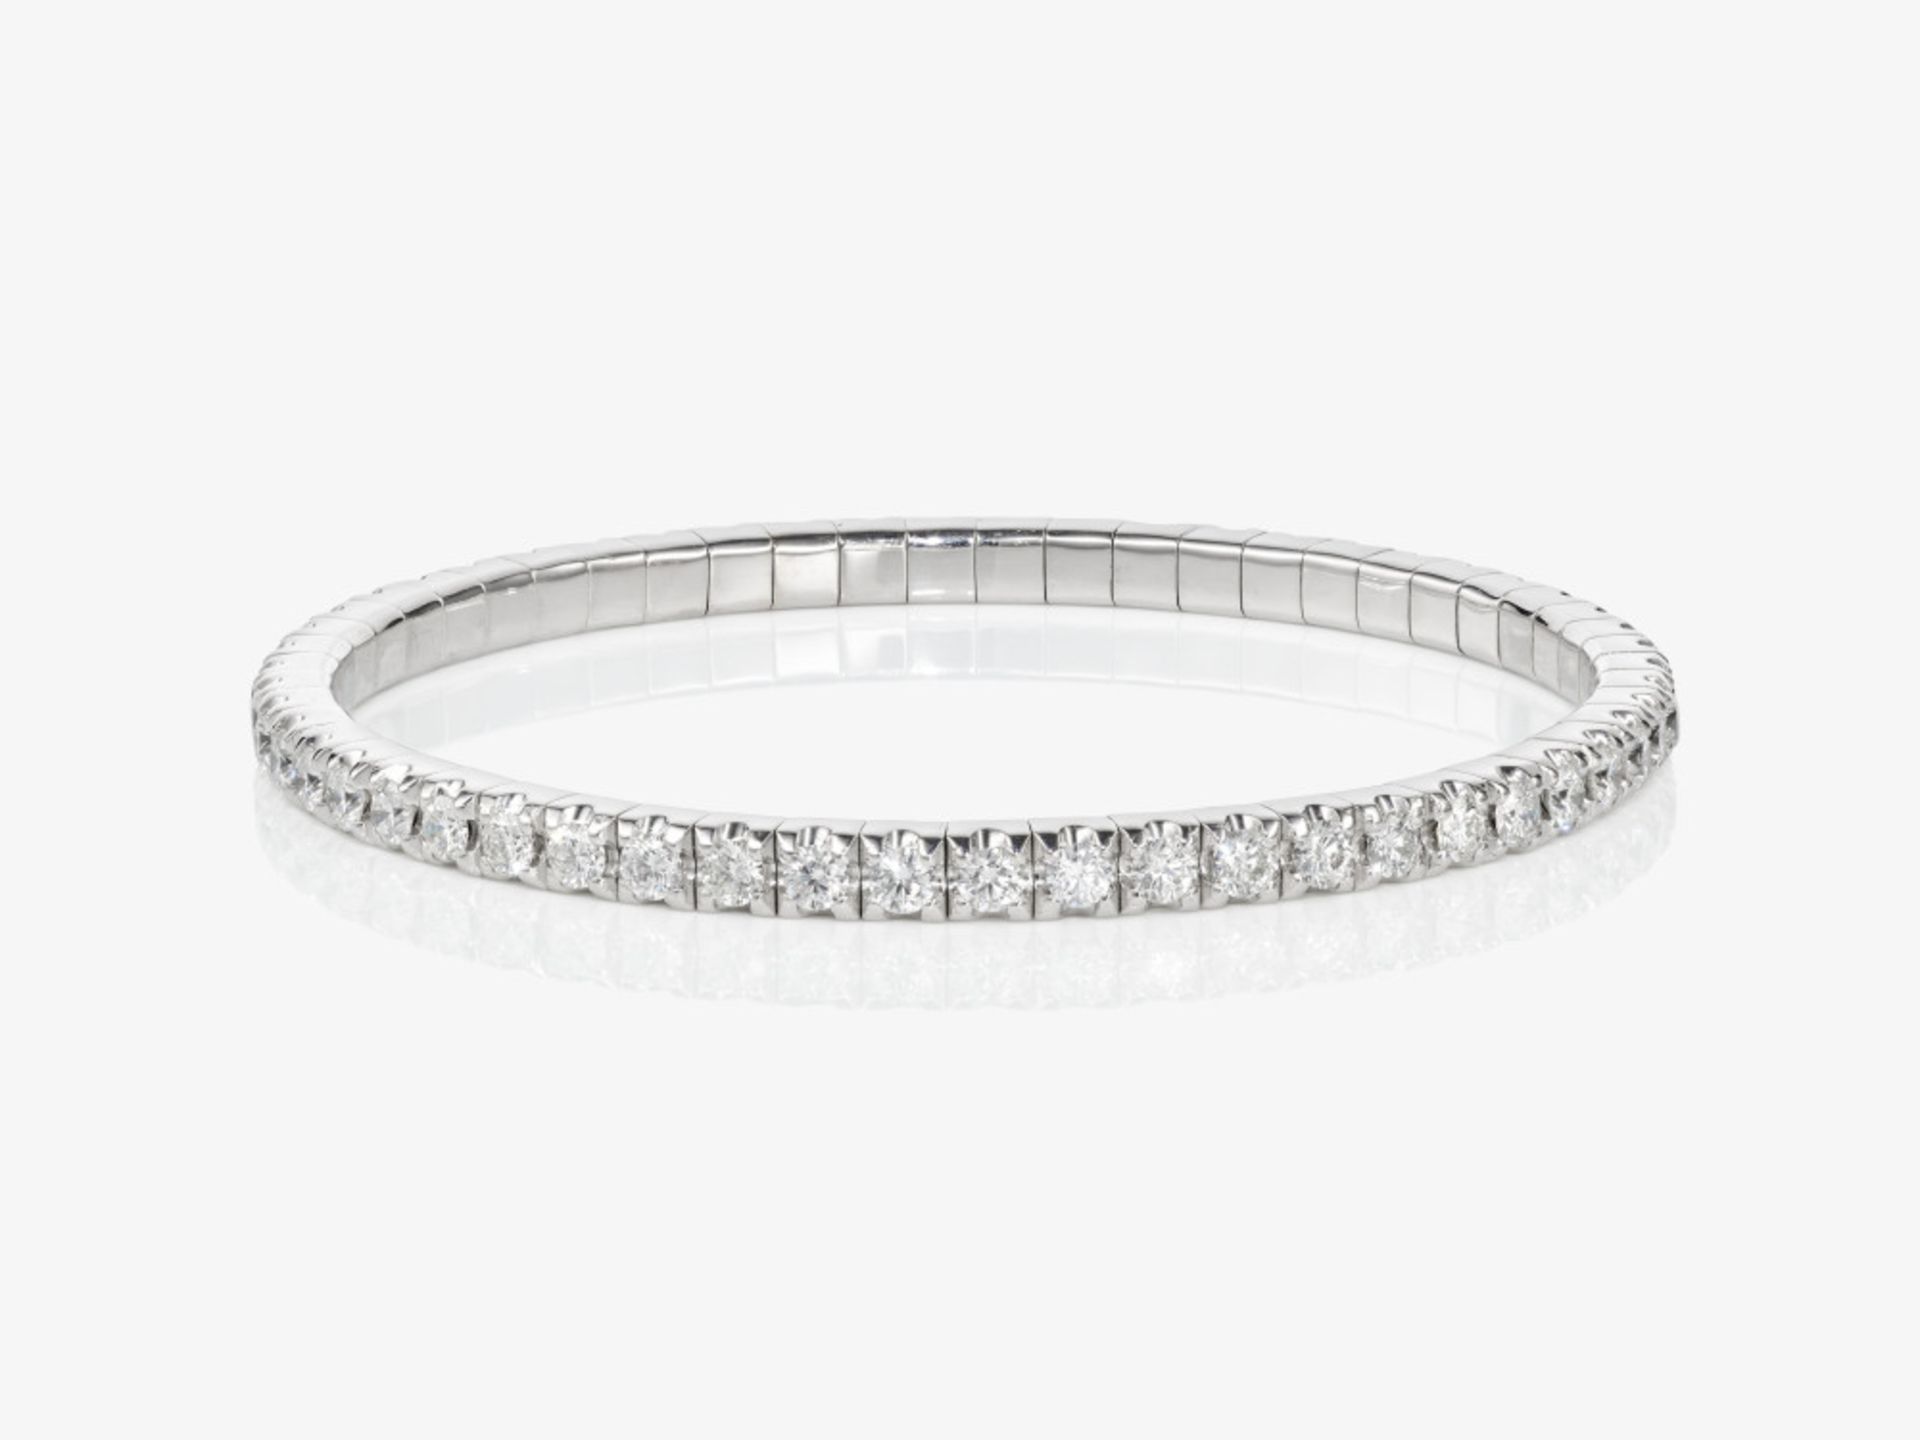 An expandable Rivière bracelet decorated with brilliant-cut diamonds - Belgium, ANTWERP ATELIERS